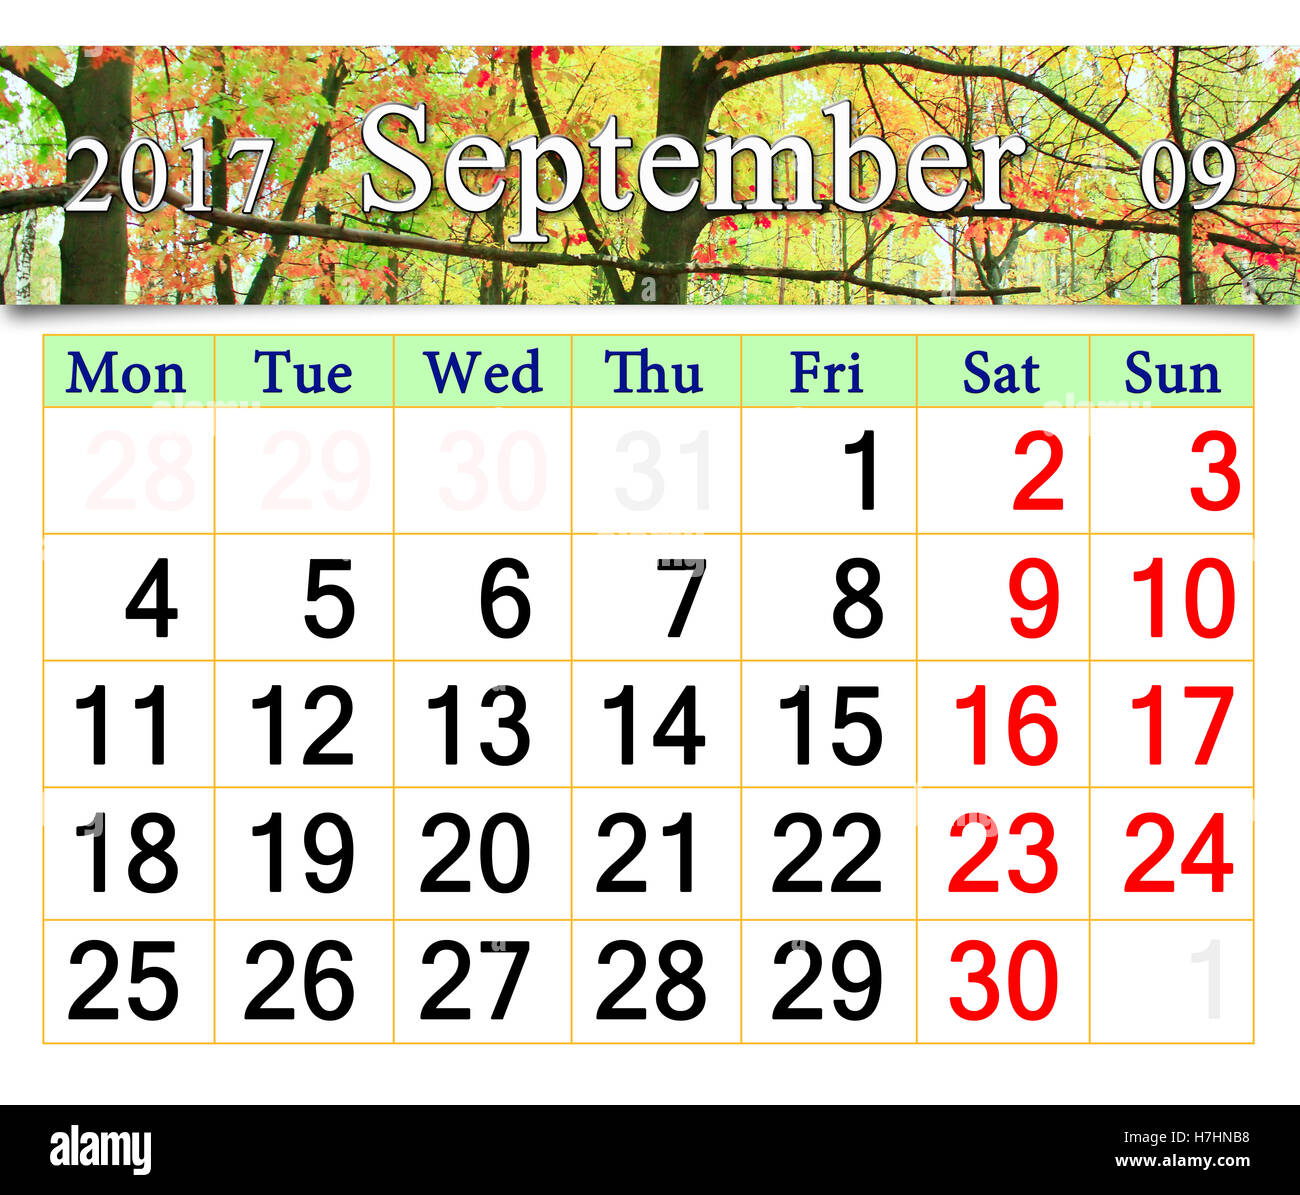 Calendrier pour 2017 avec parc d'automne Septembre vert et jaune avec des érables et des Chênes Banque D'Images